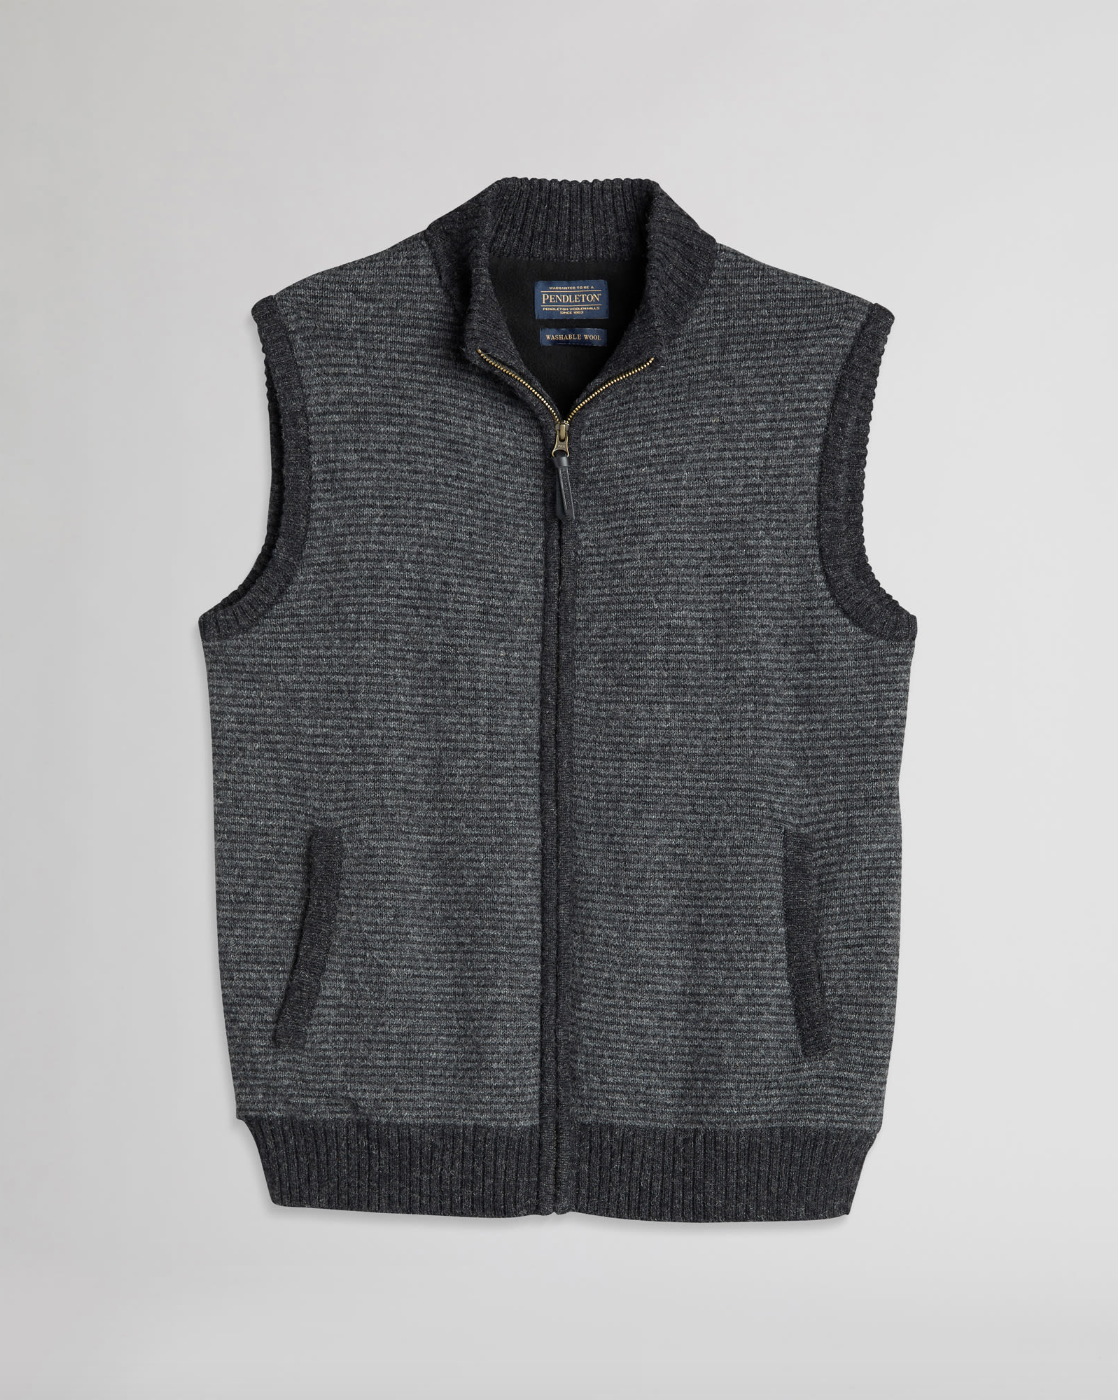 Shetland Sweater Vest<br>Charcoal/Black